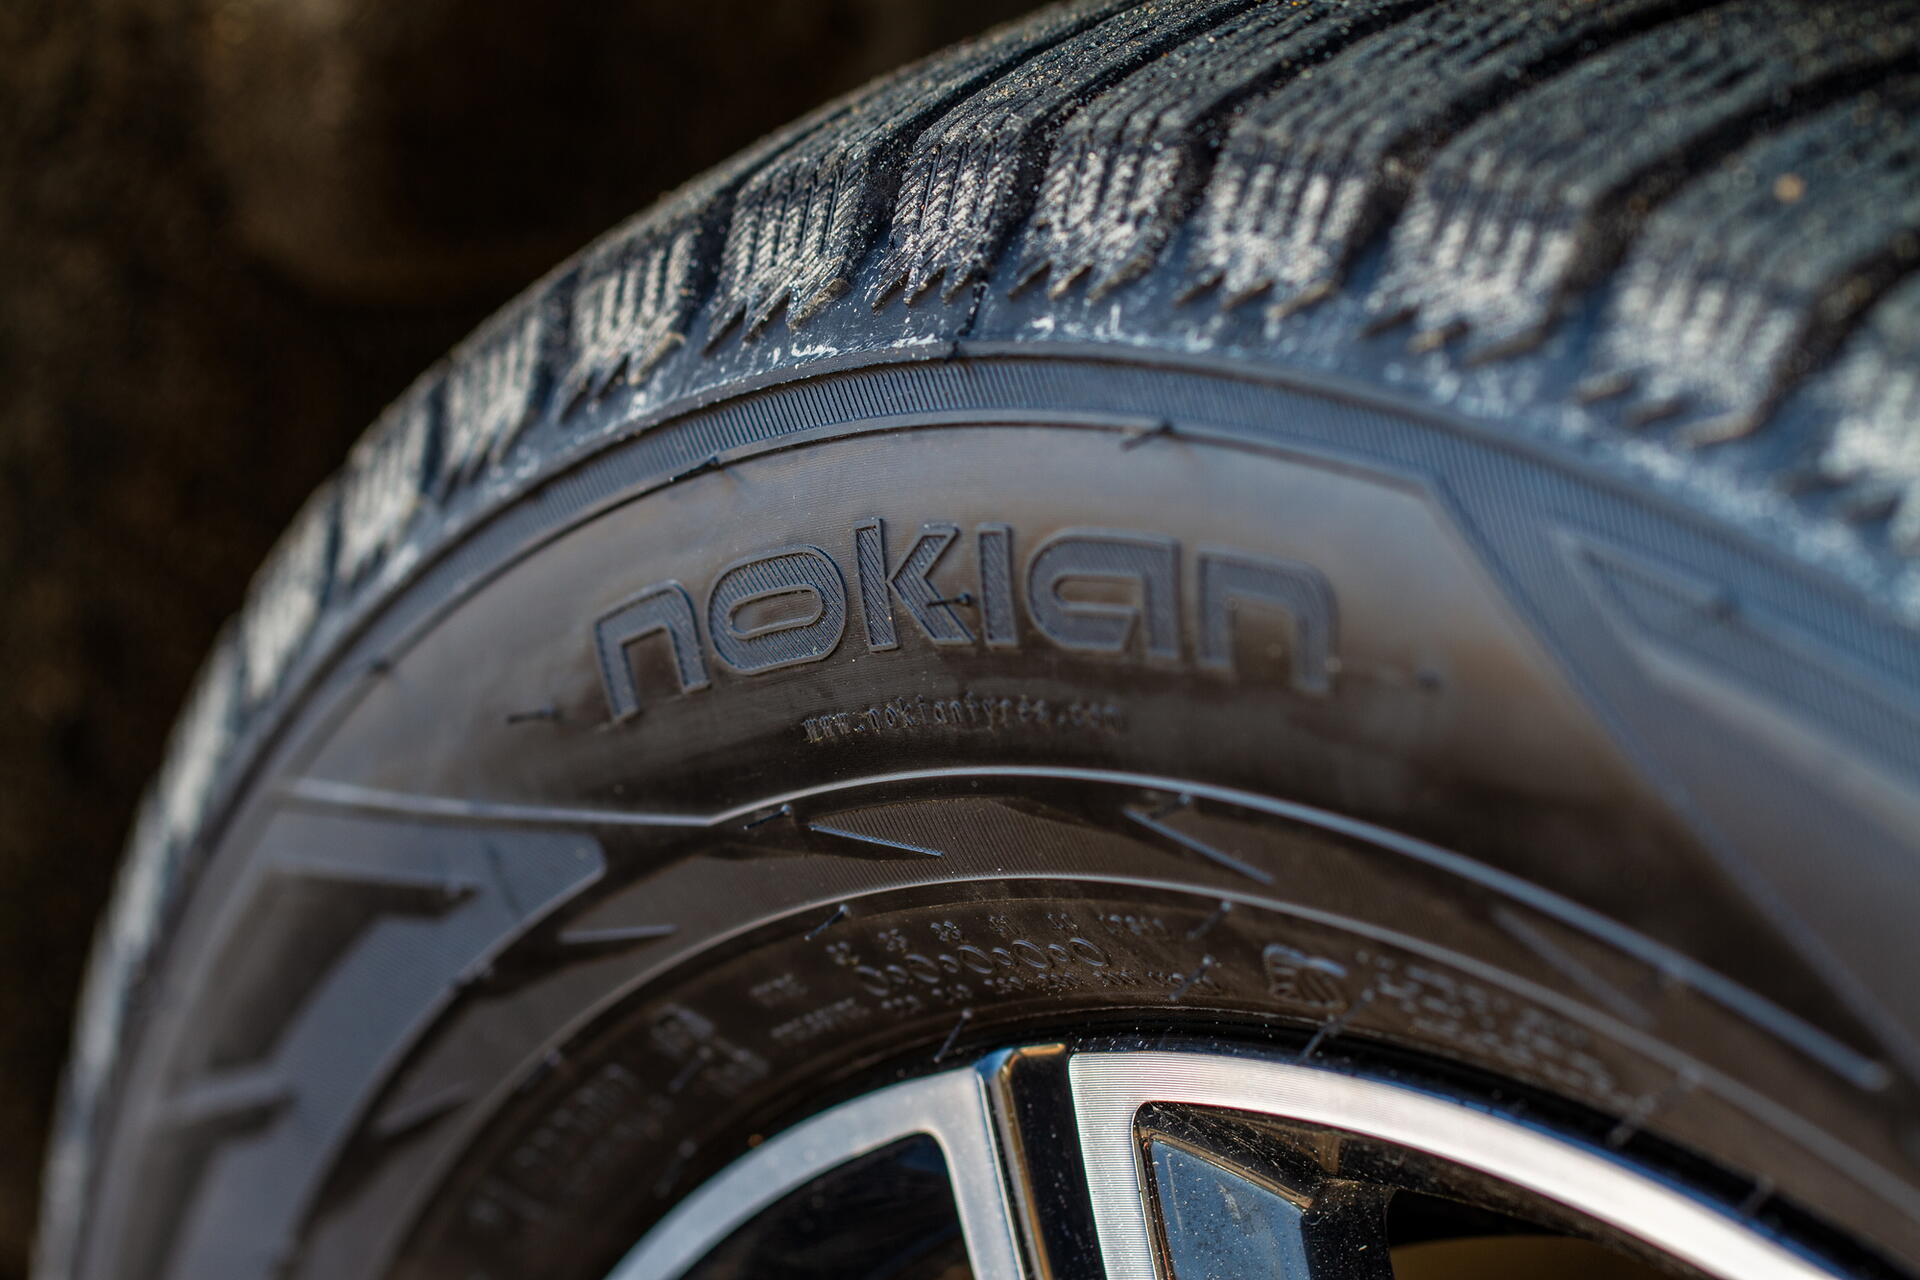 Letní pneumatiky Nokian - recenze uživatelů